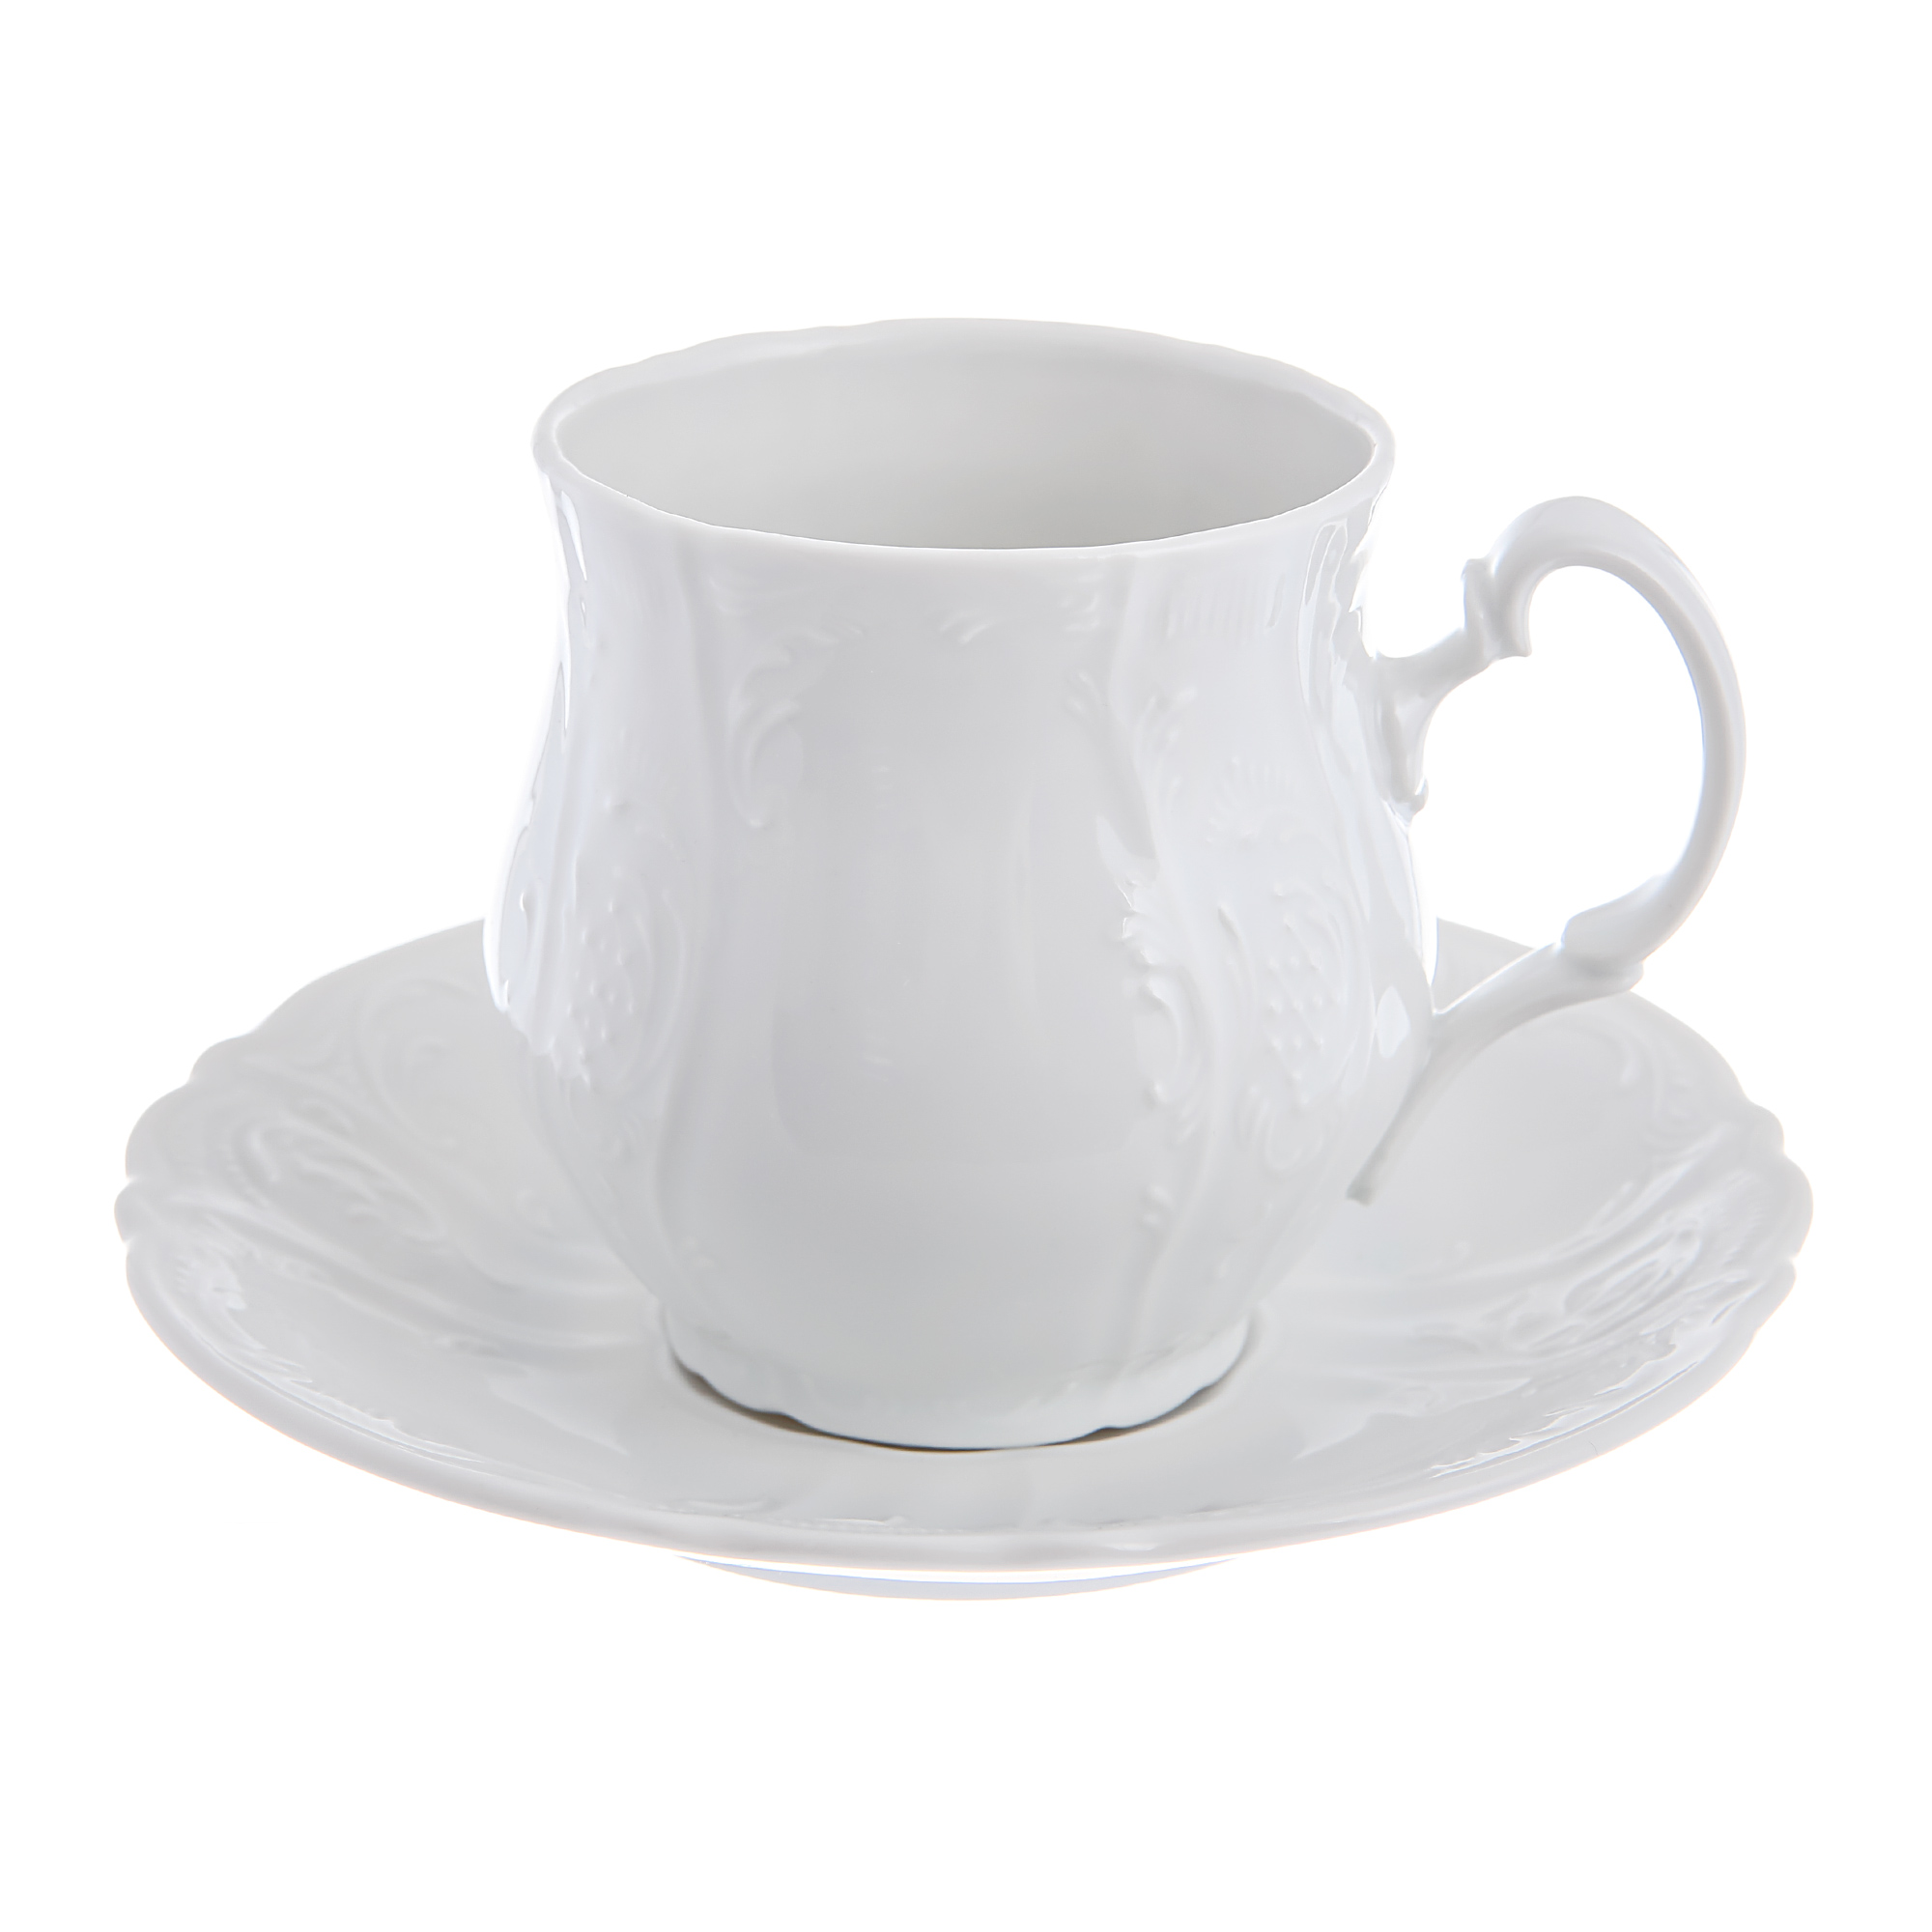 Чашка для чая 250мл с блюдцем: недекорированная Bernadotte чашка для чая 250мл с блюдцем недекорированная bernadotte